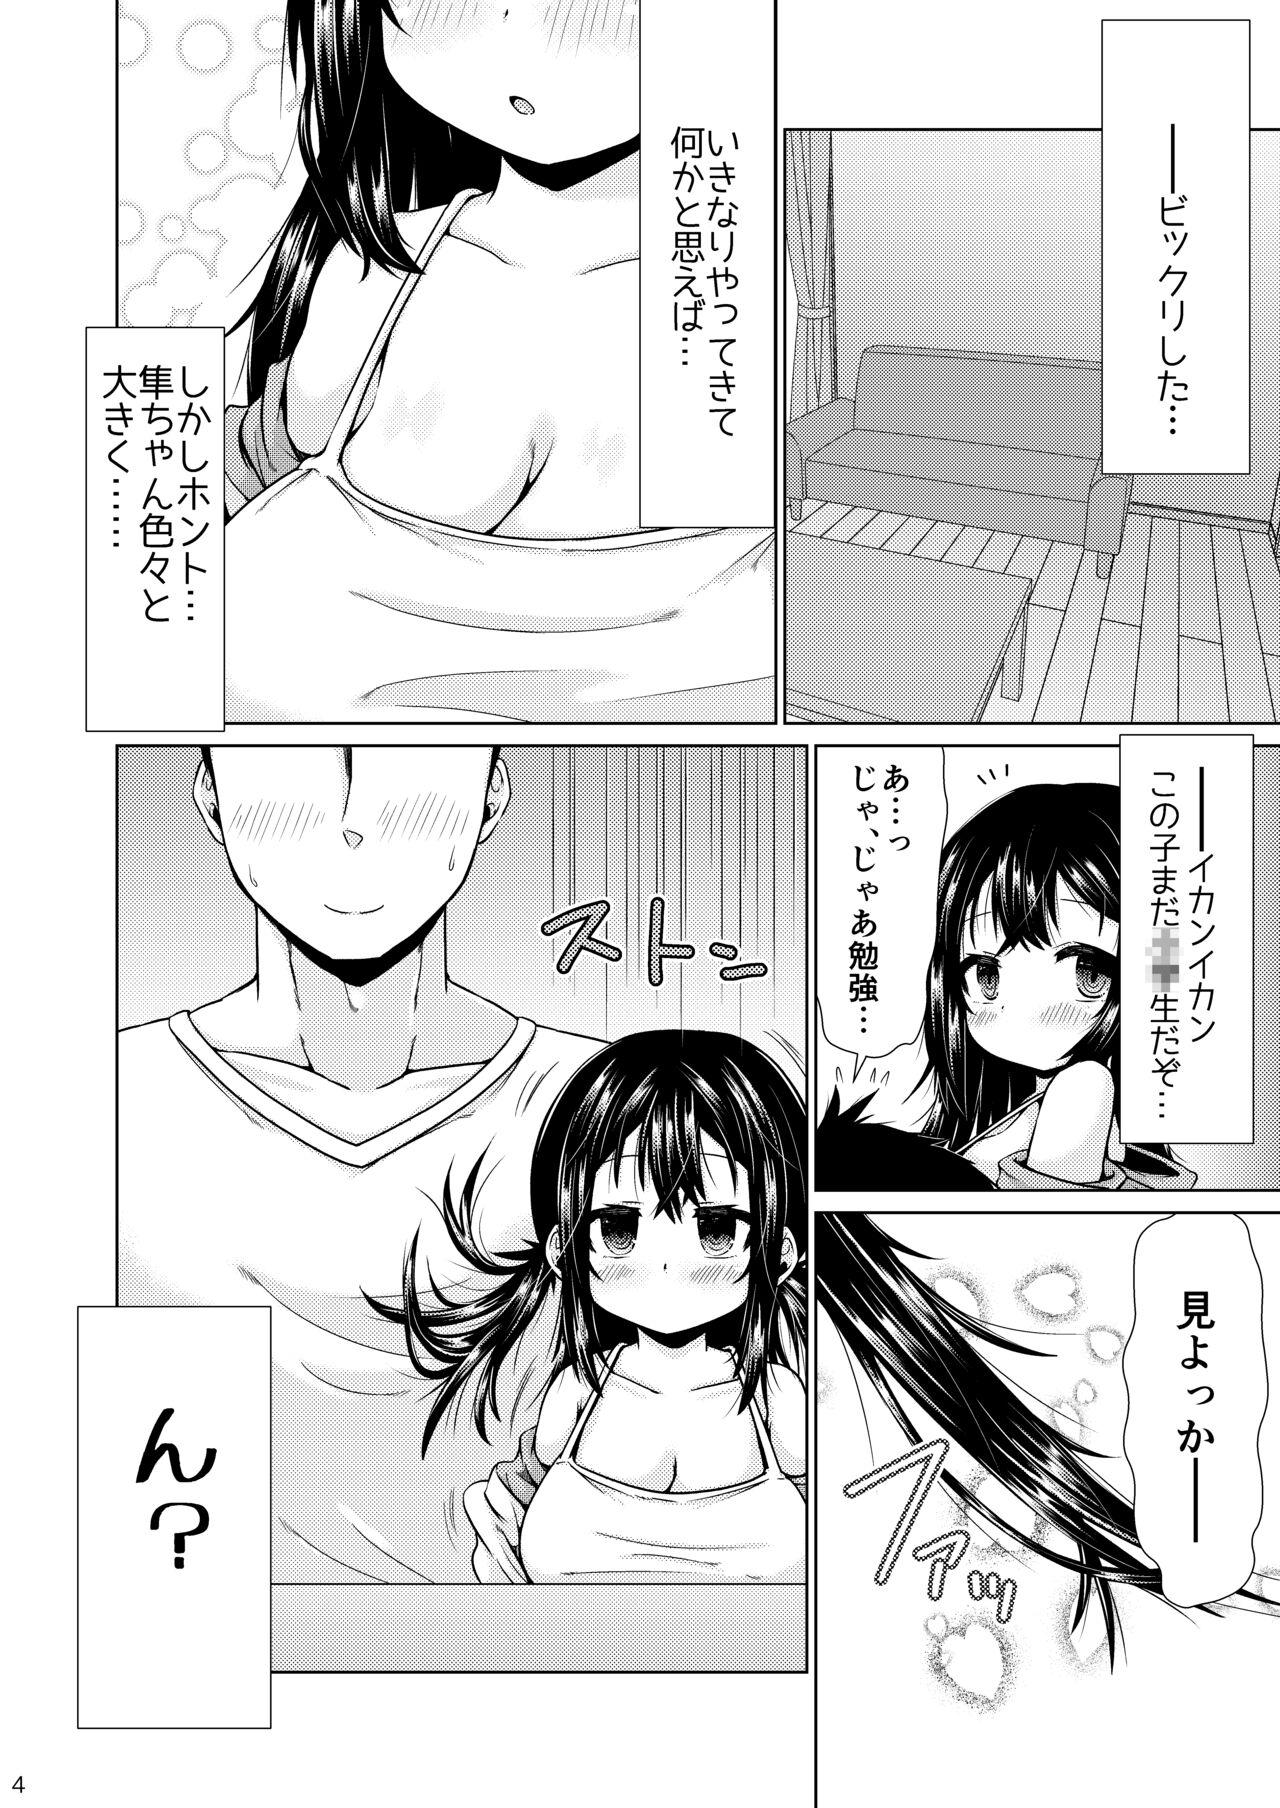 Shemale Otonari no J ￮ ga nani o kangae teru ka wakaranai kudan. - Original Roundass - Page 3